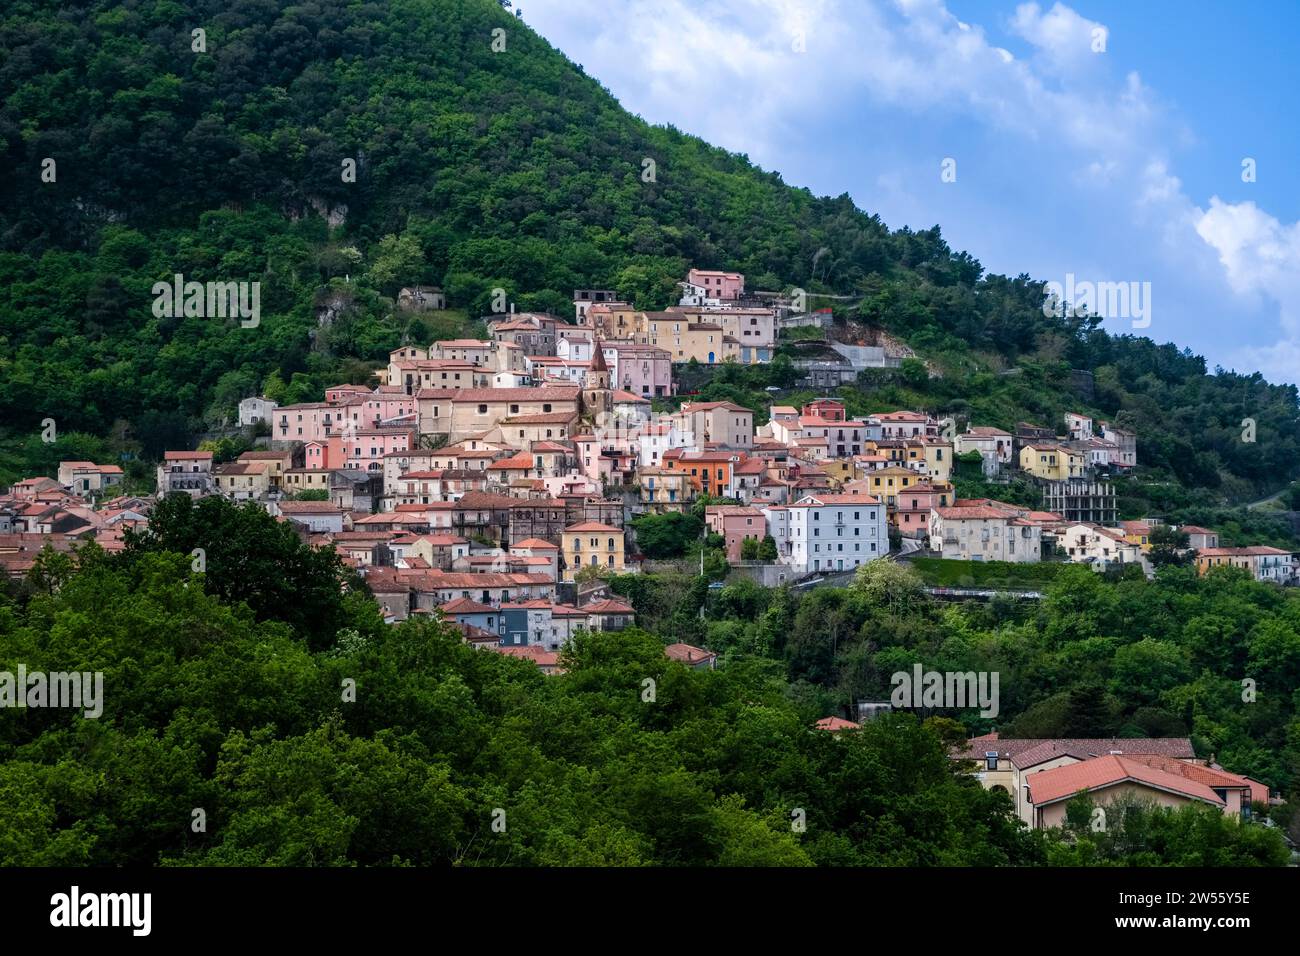 Die Häuser der kleinen Stadt Trecchina, am Hang eines bewaldeten Hügels gelegen. Stockfoto